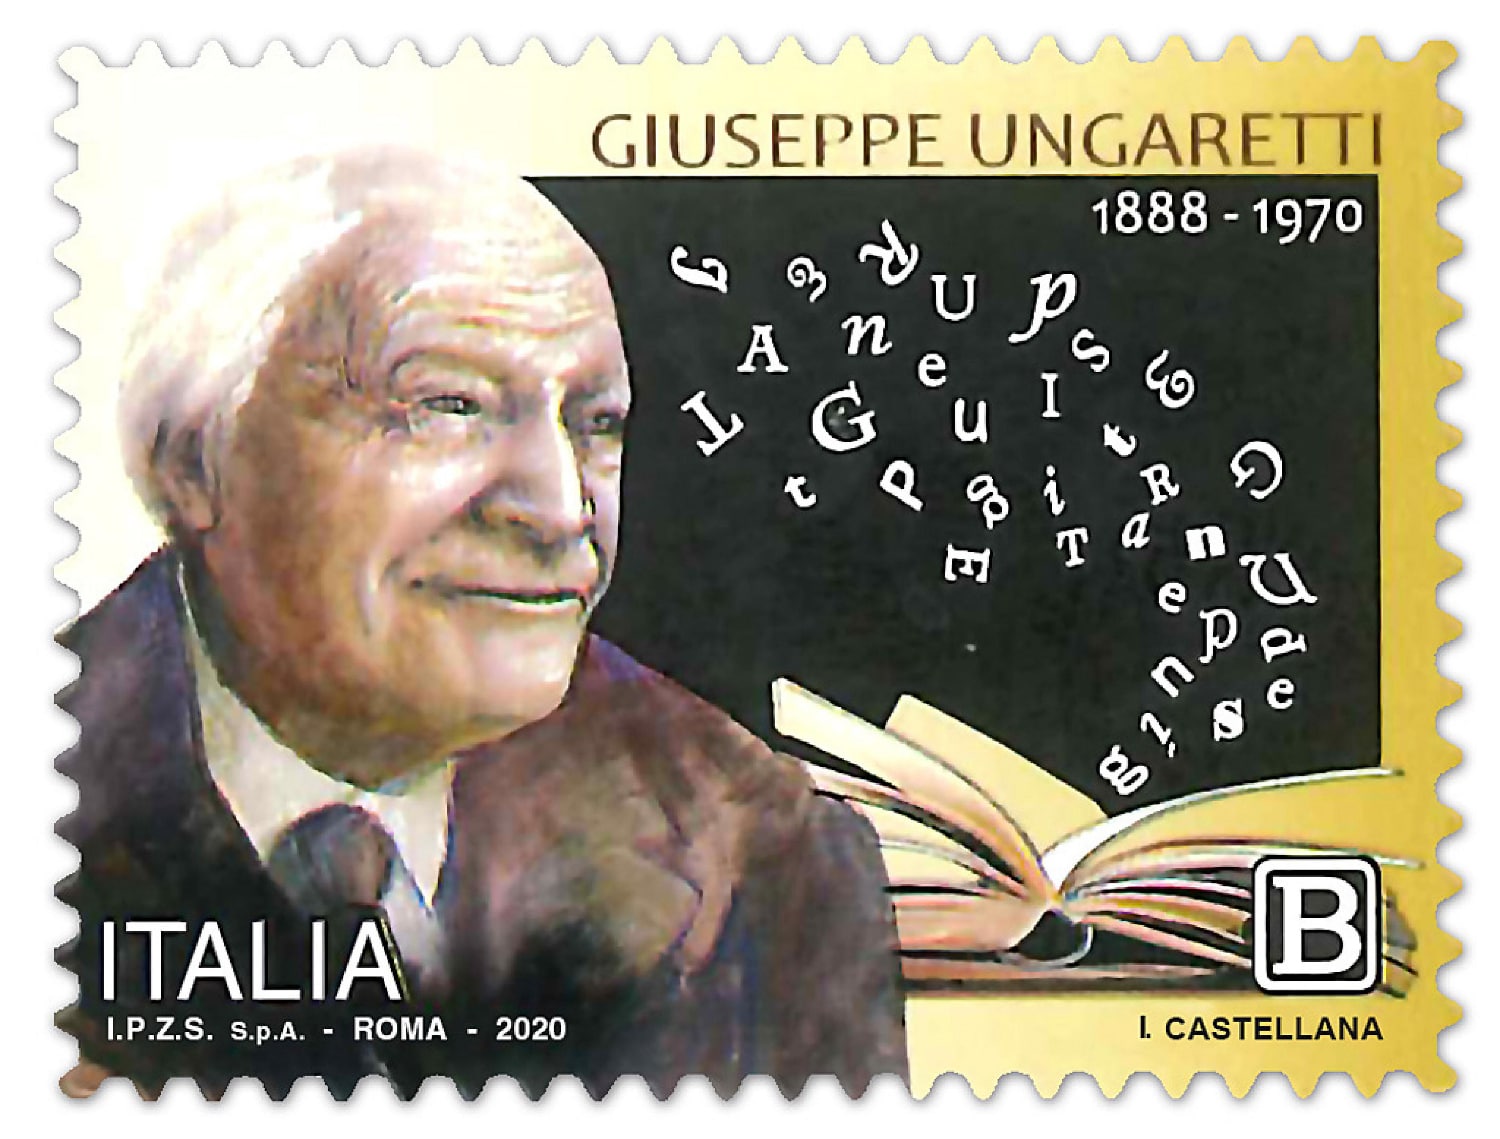 Il francobollo emesso per ricordare i 50 anni dalla morte del poeta Giuseppe Ungaretti il 1 giugno 2020